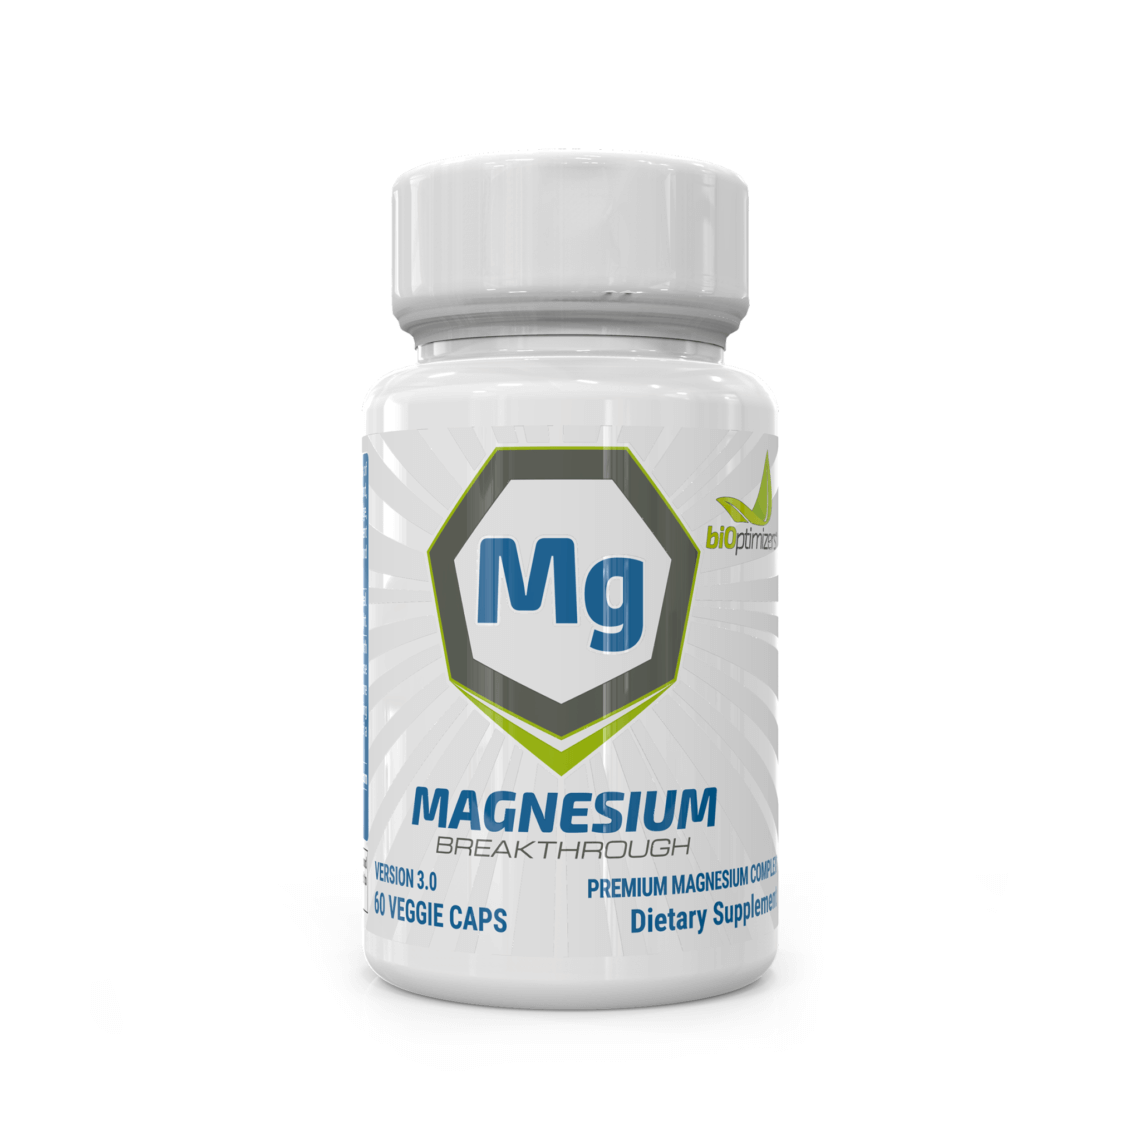 Magnesium Breakthrough Promo Code - Best Magnesium Supplement For Migraines